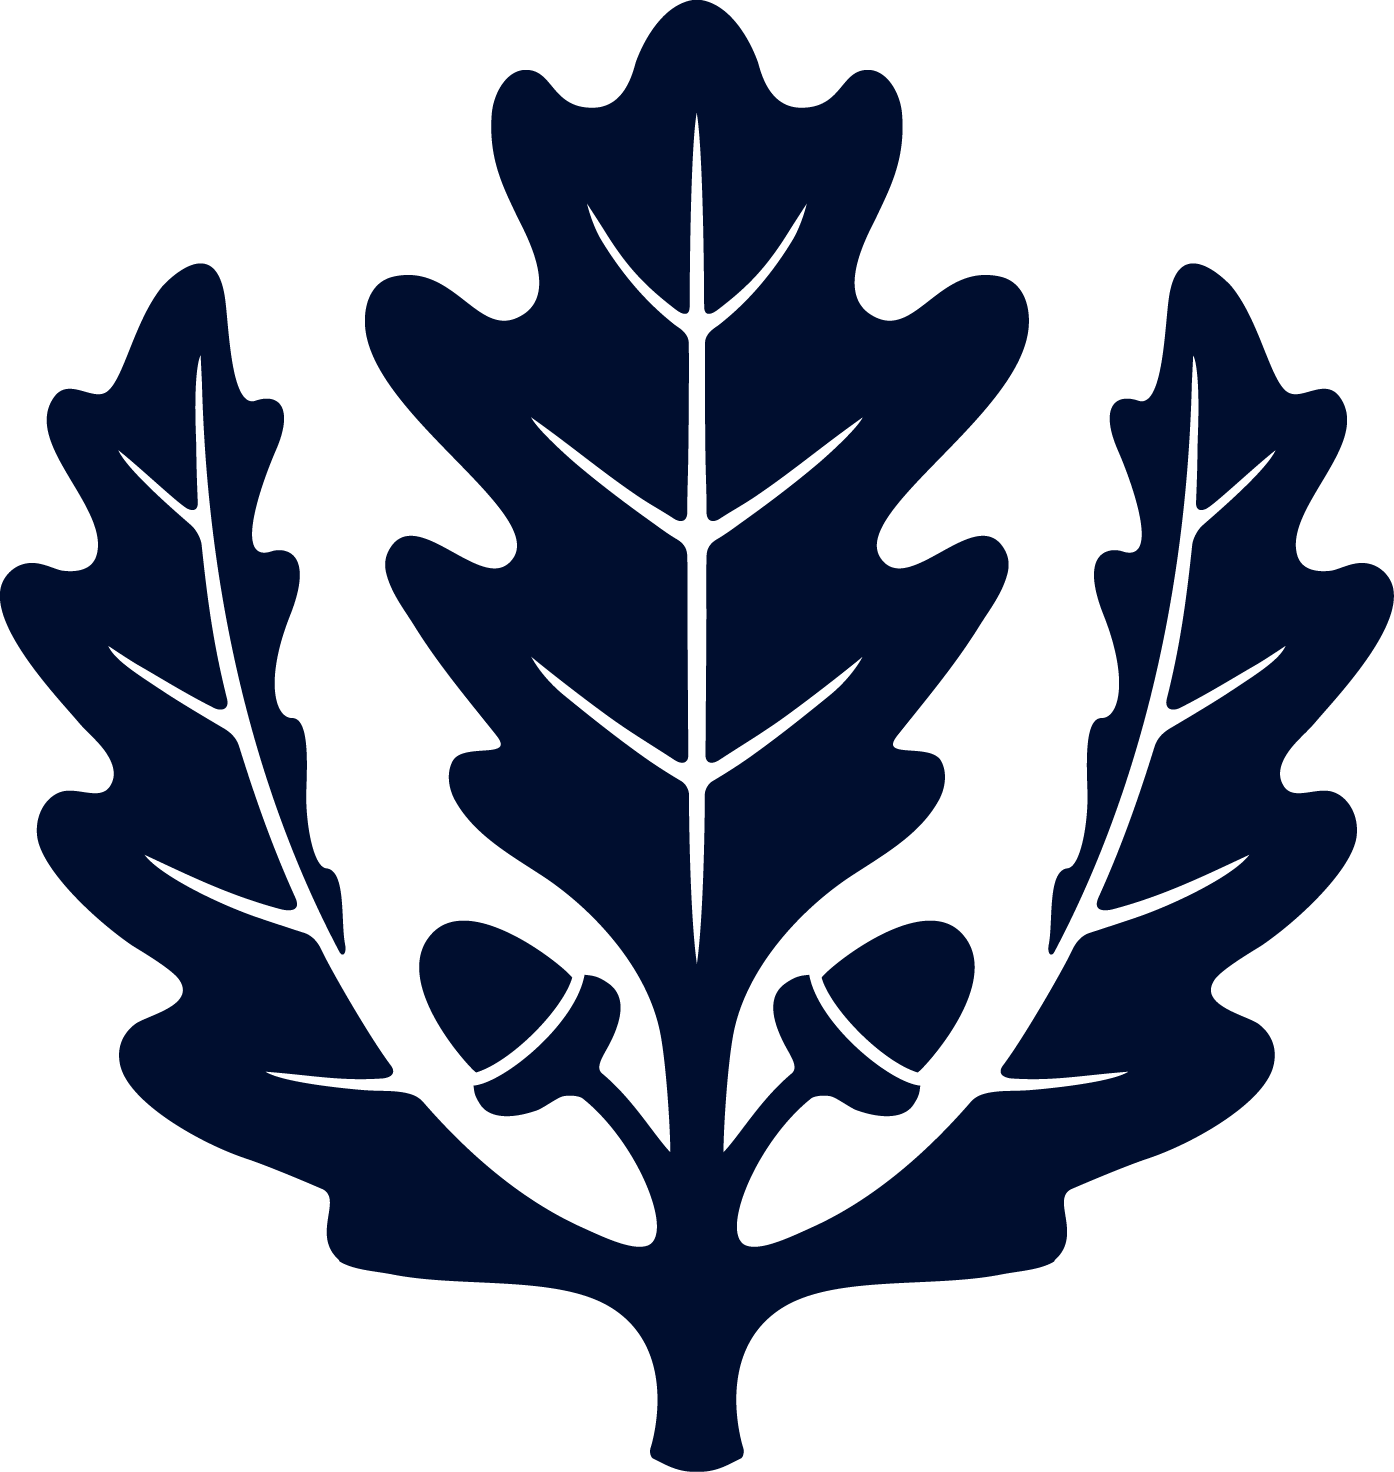 UConn oak leaf blue